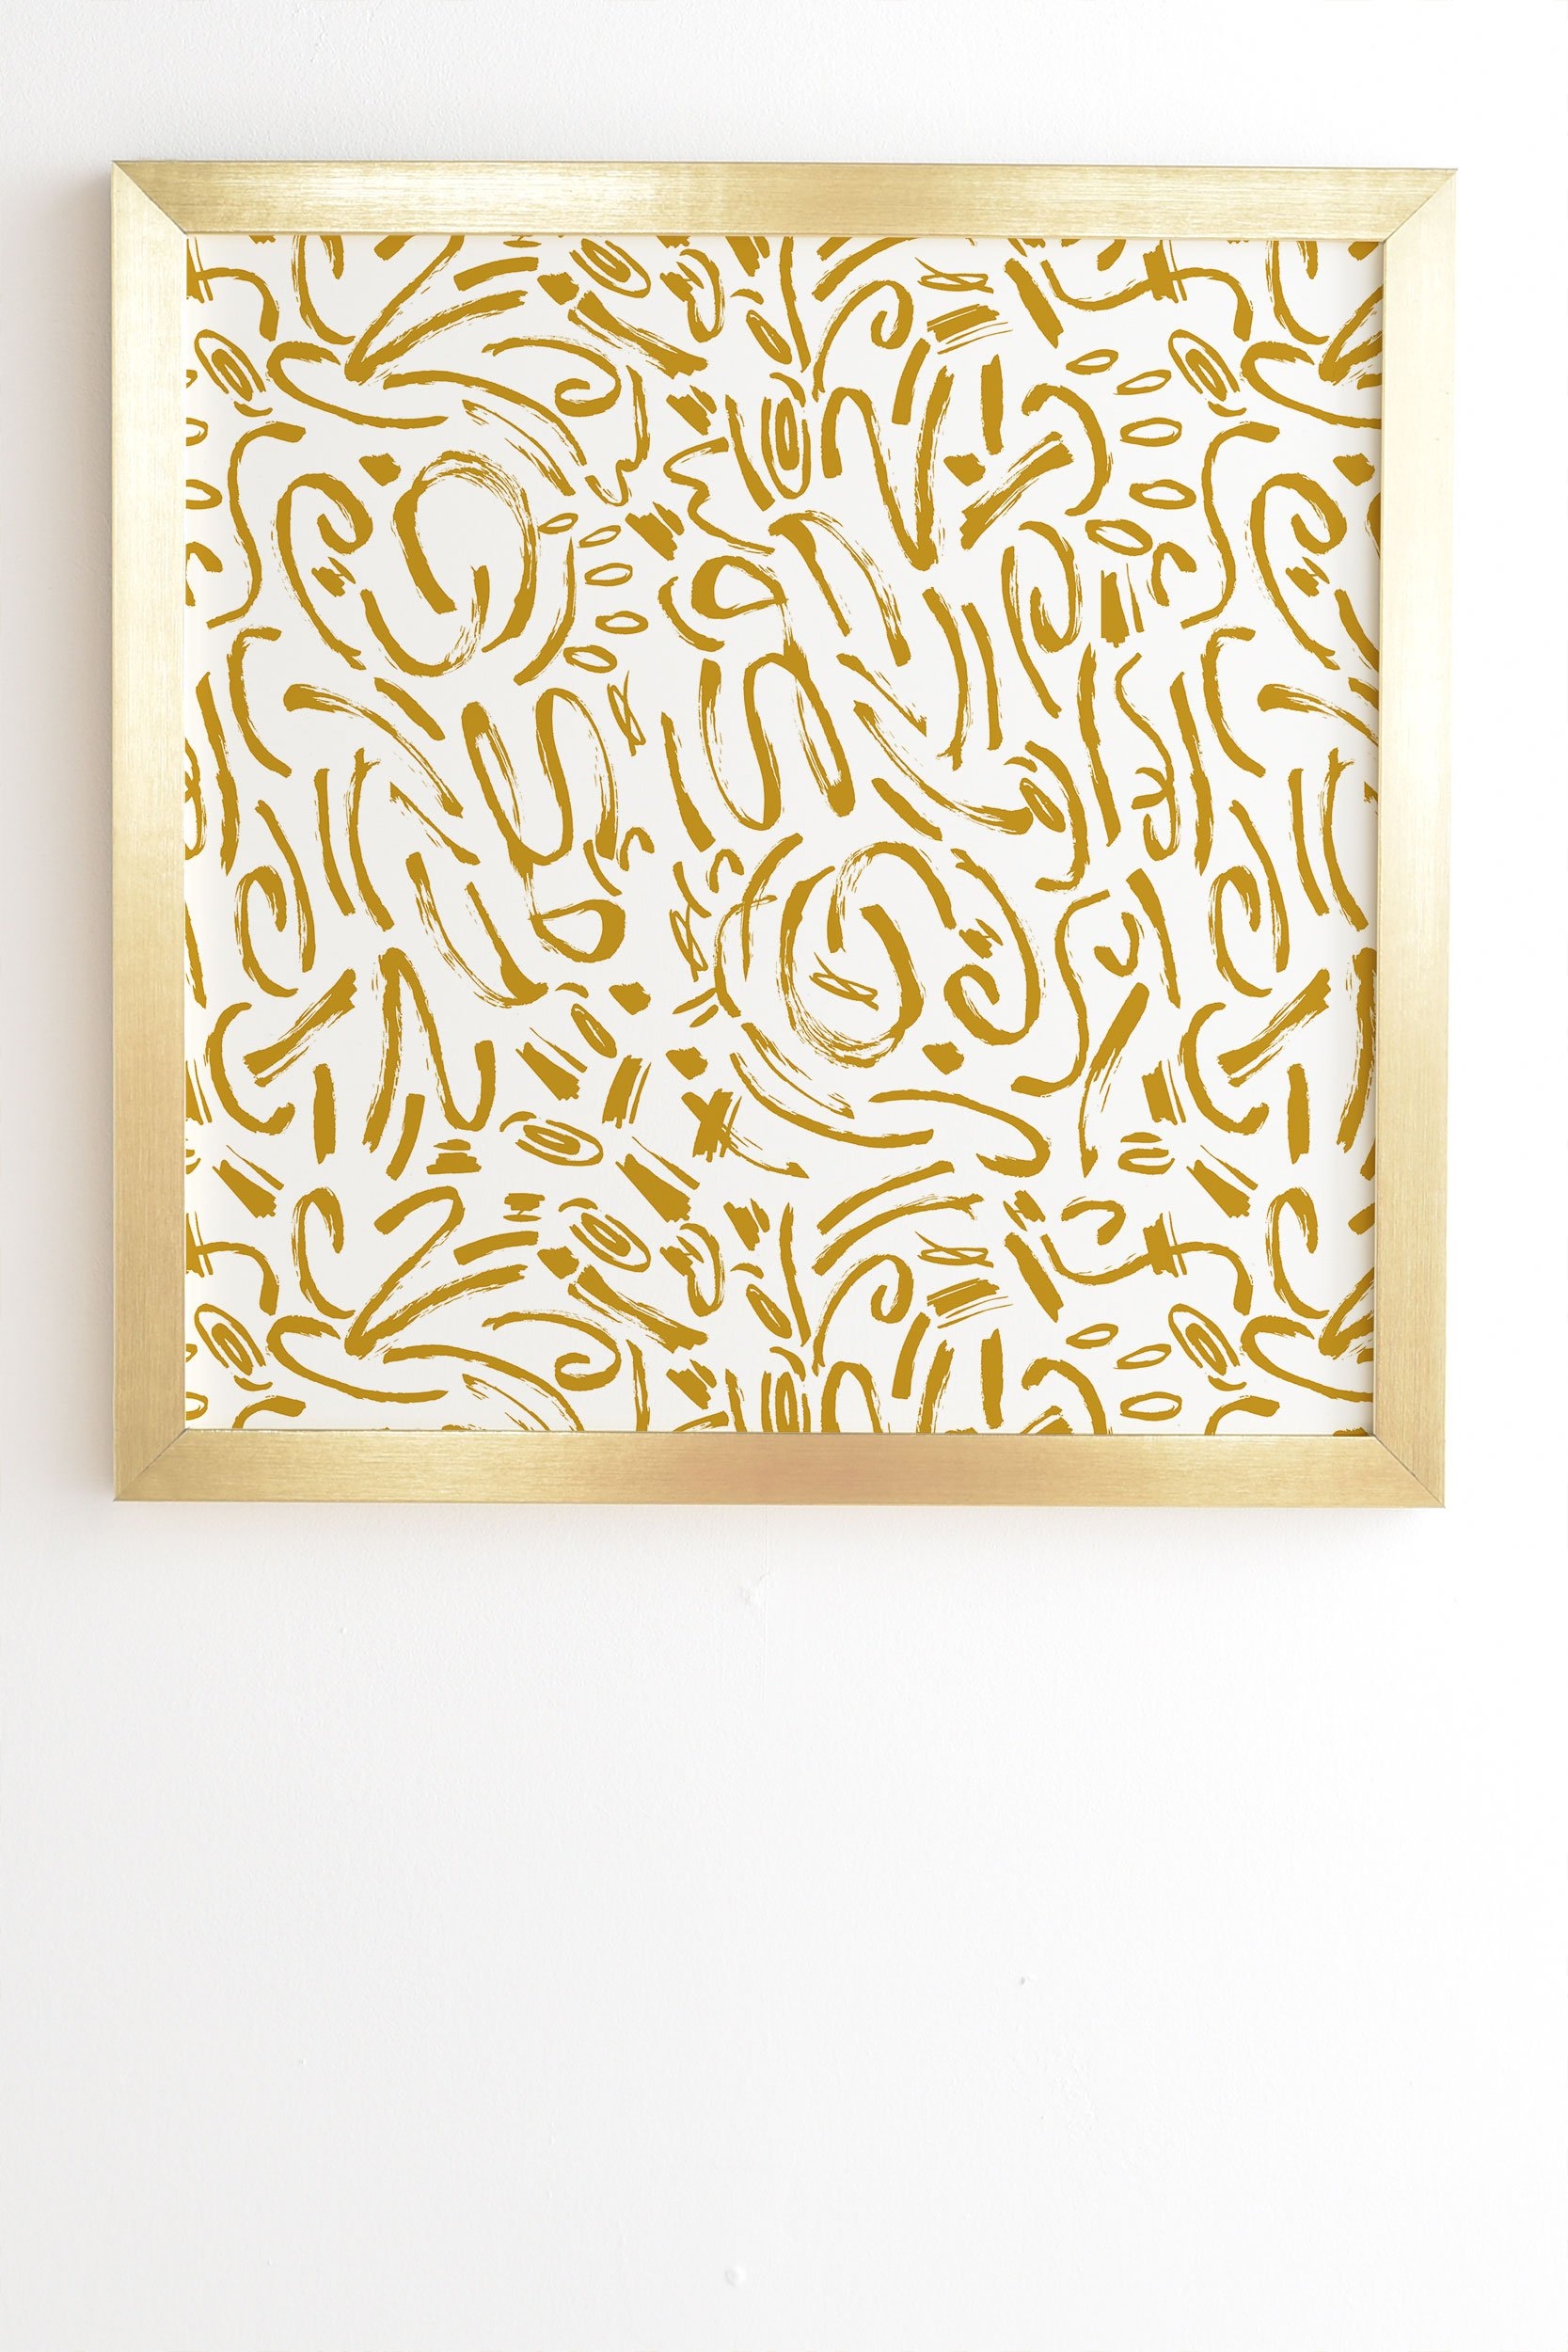 Marta Barragan Camarasa Wildness abstract brushstrokes Gold Framed Wall Art - 20" x 20" - Image 1